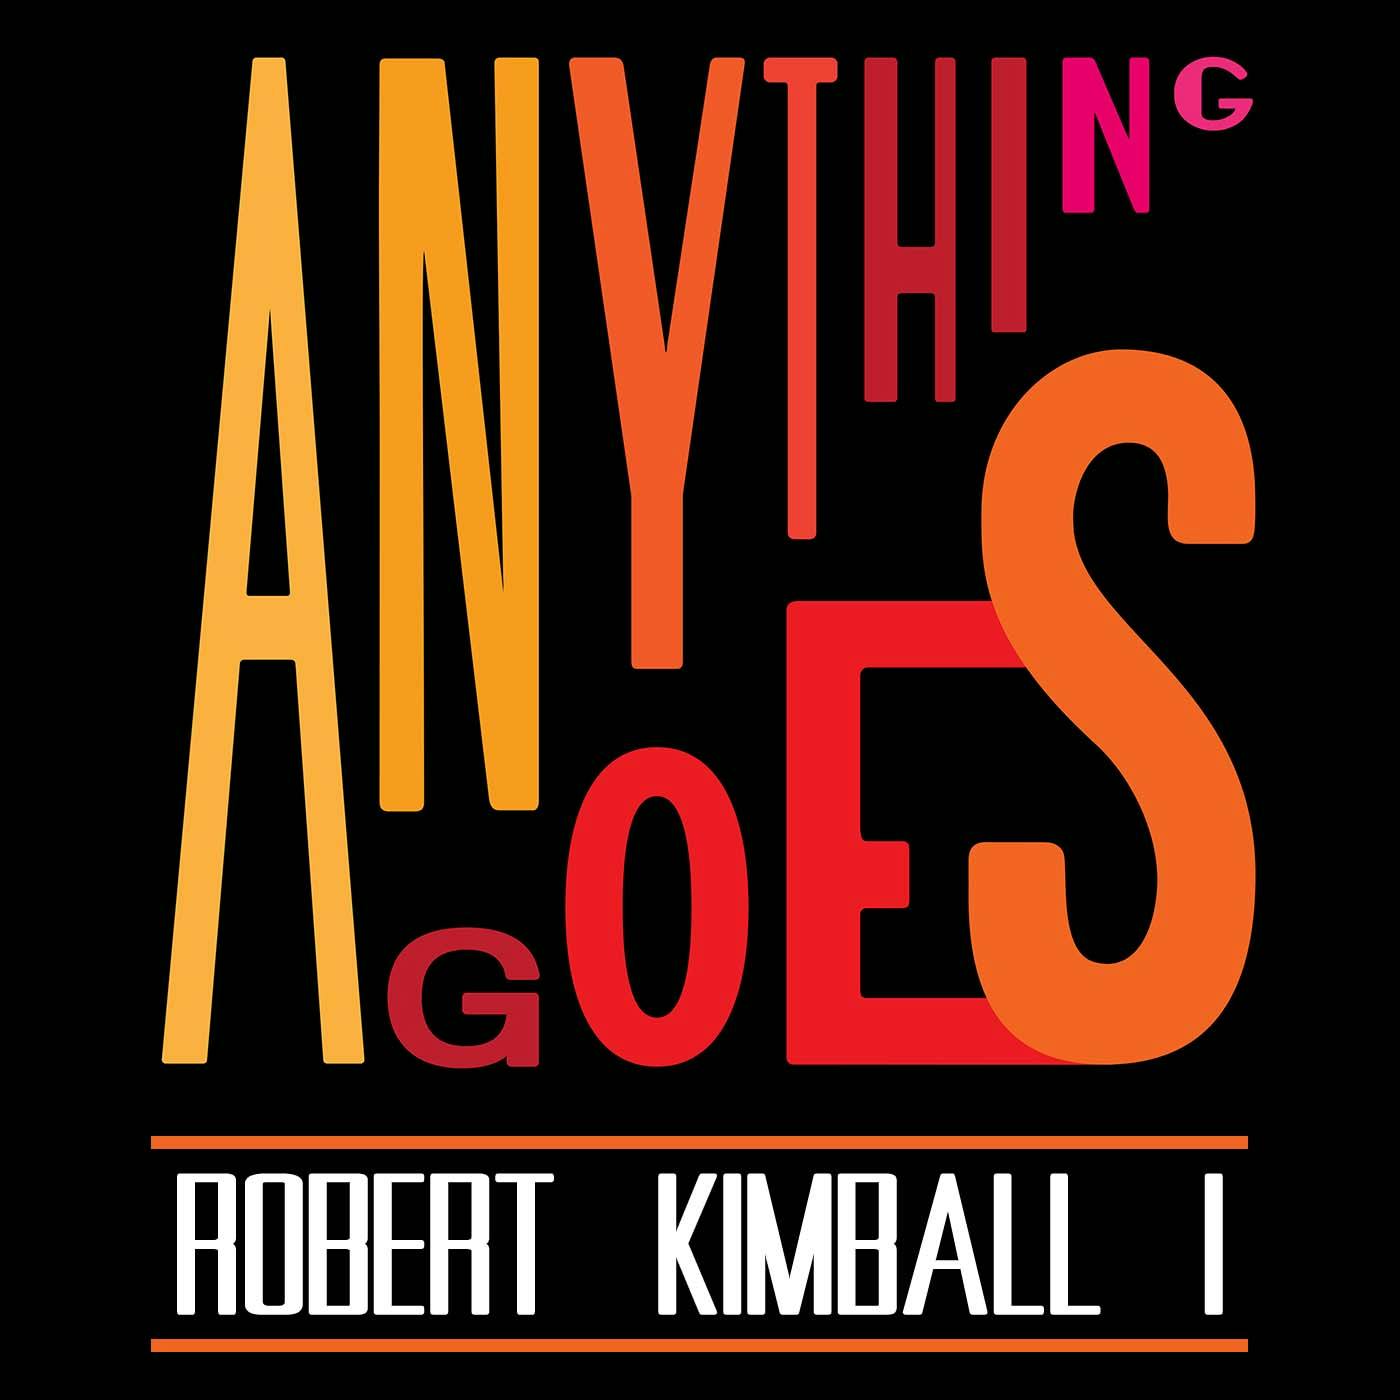 58 Robert Kimball I